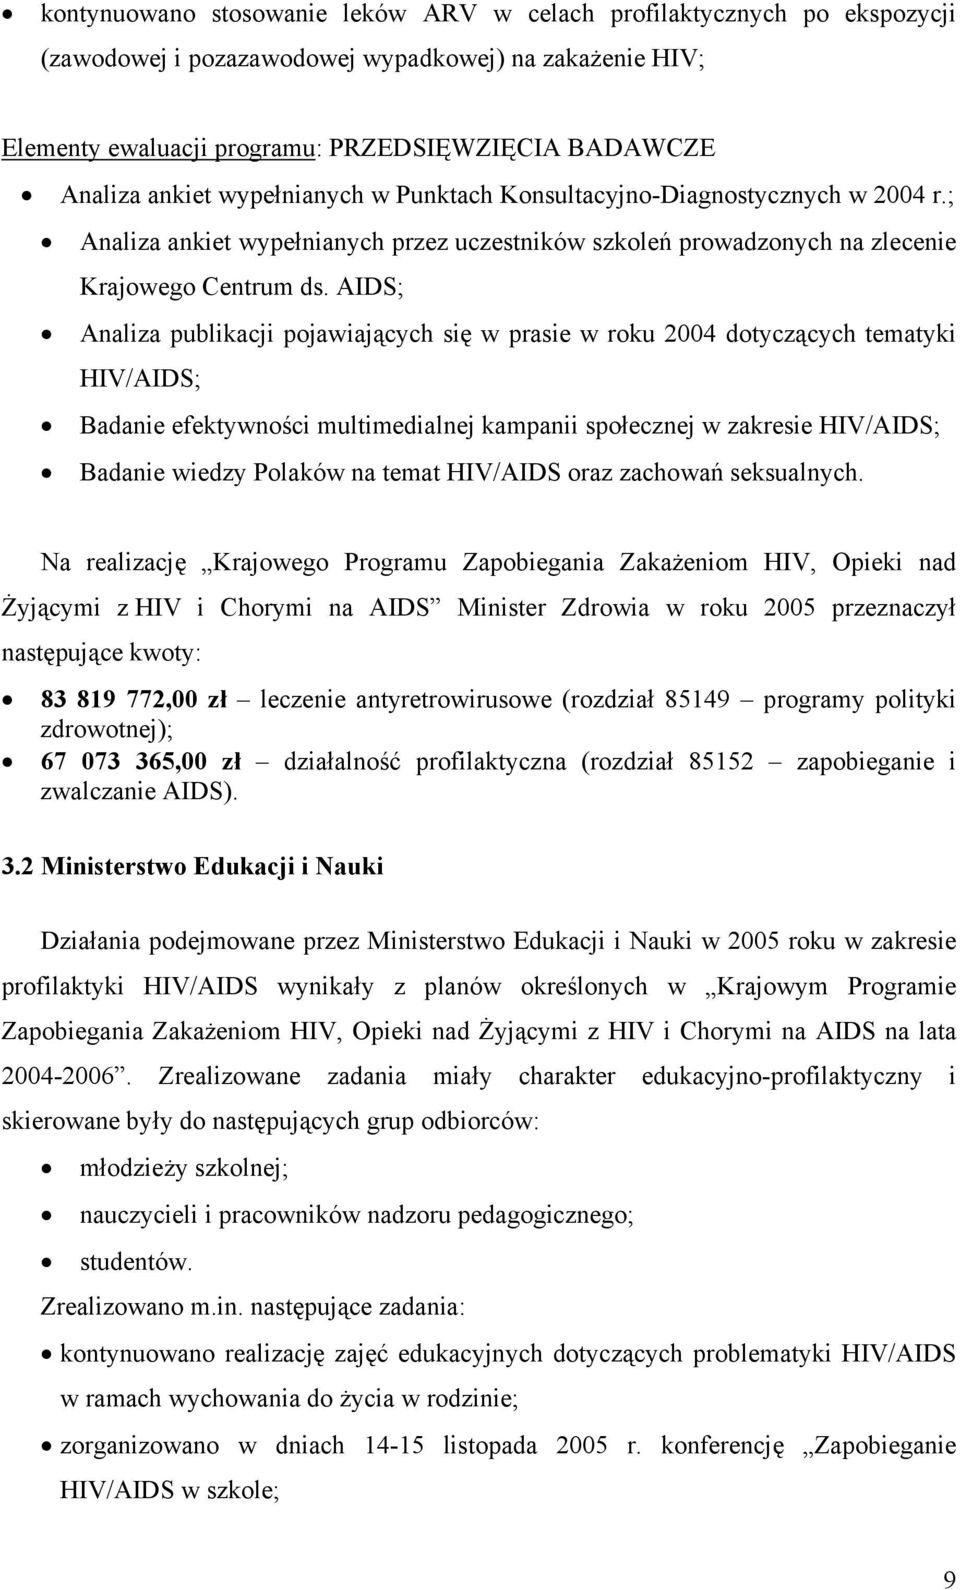 AIDS; Analiza publikacji pojawiających się w prasie w roku 2004 dotyczących tematyki HIV/AIDS; Badanie efektywności multimedialnej kampanii społecznej w zakresie HIV/AIDS; Badanie wiedzy Polaków na